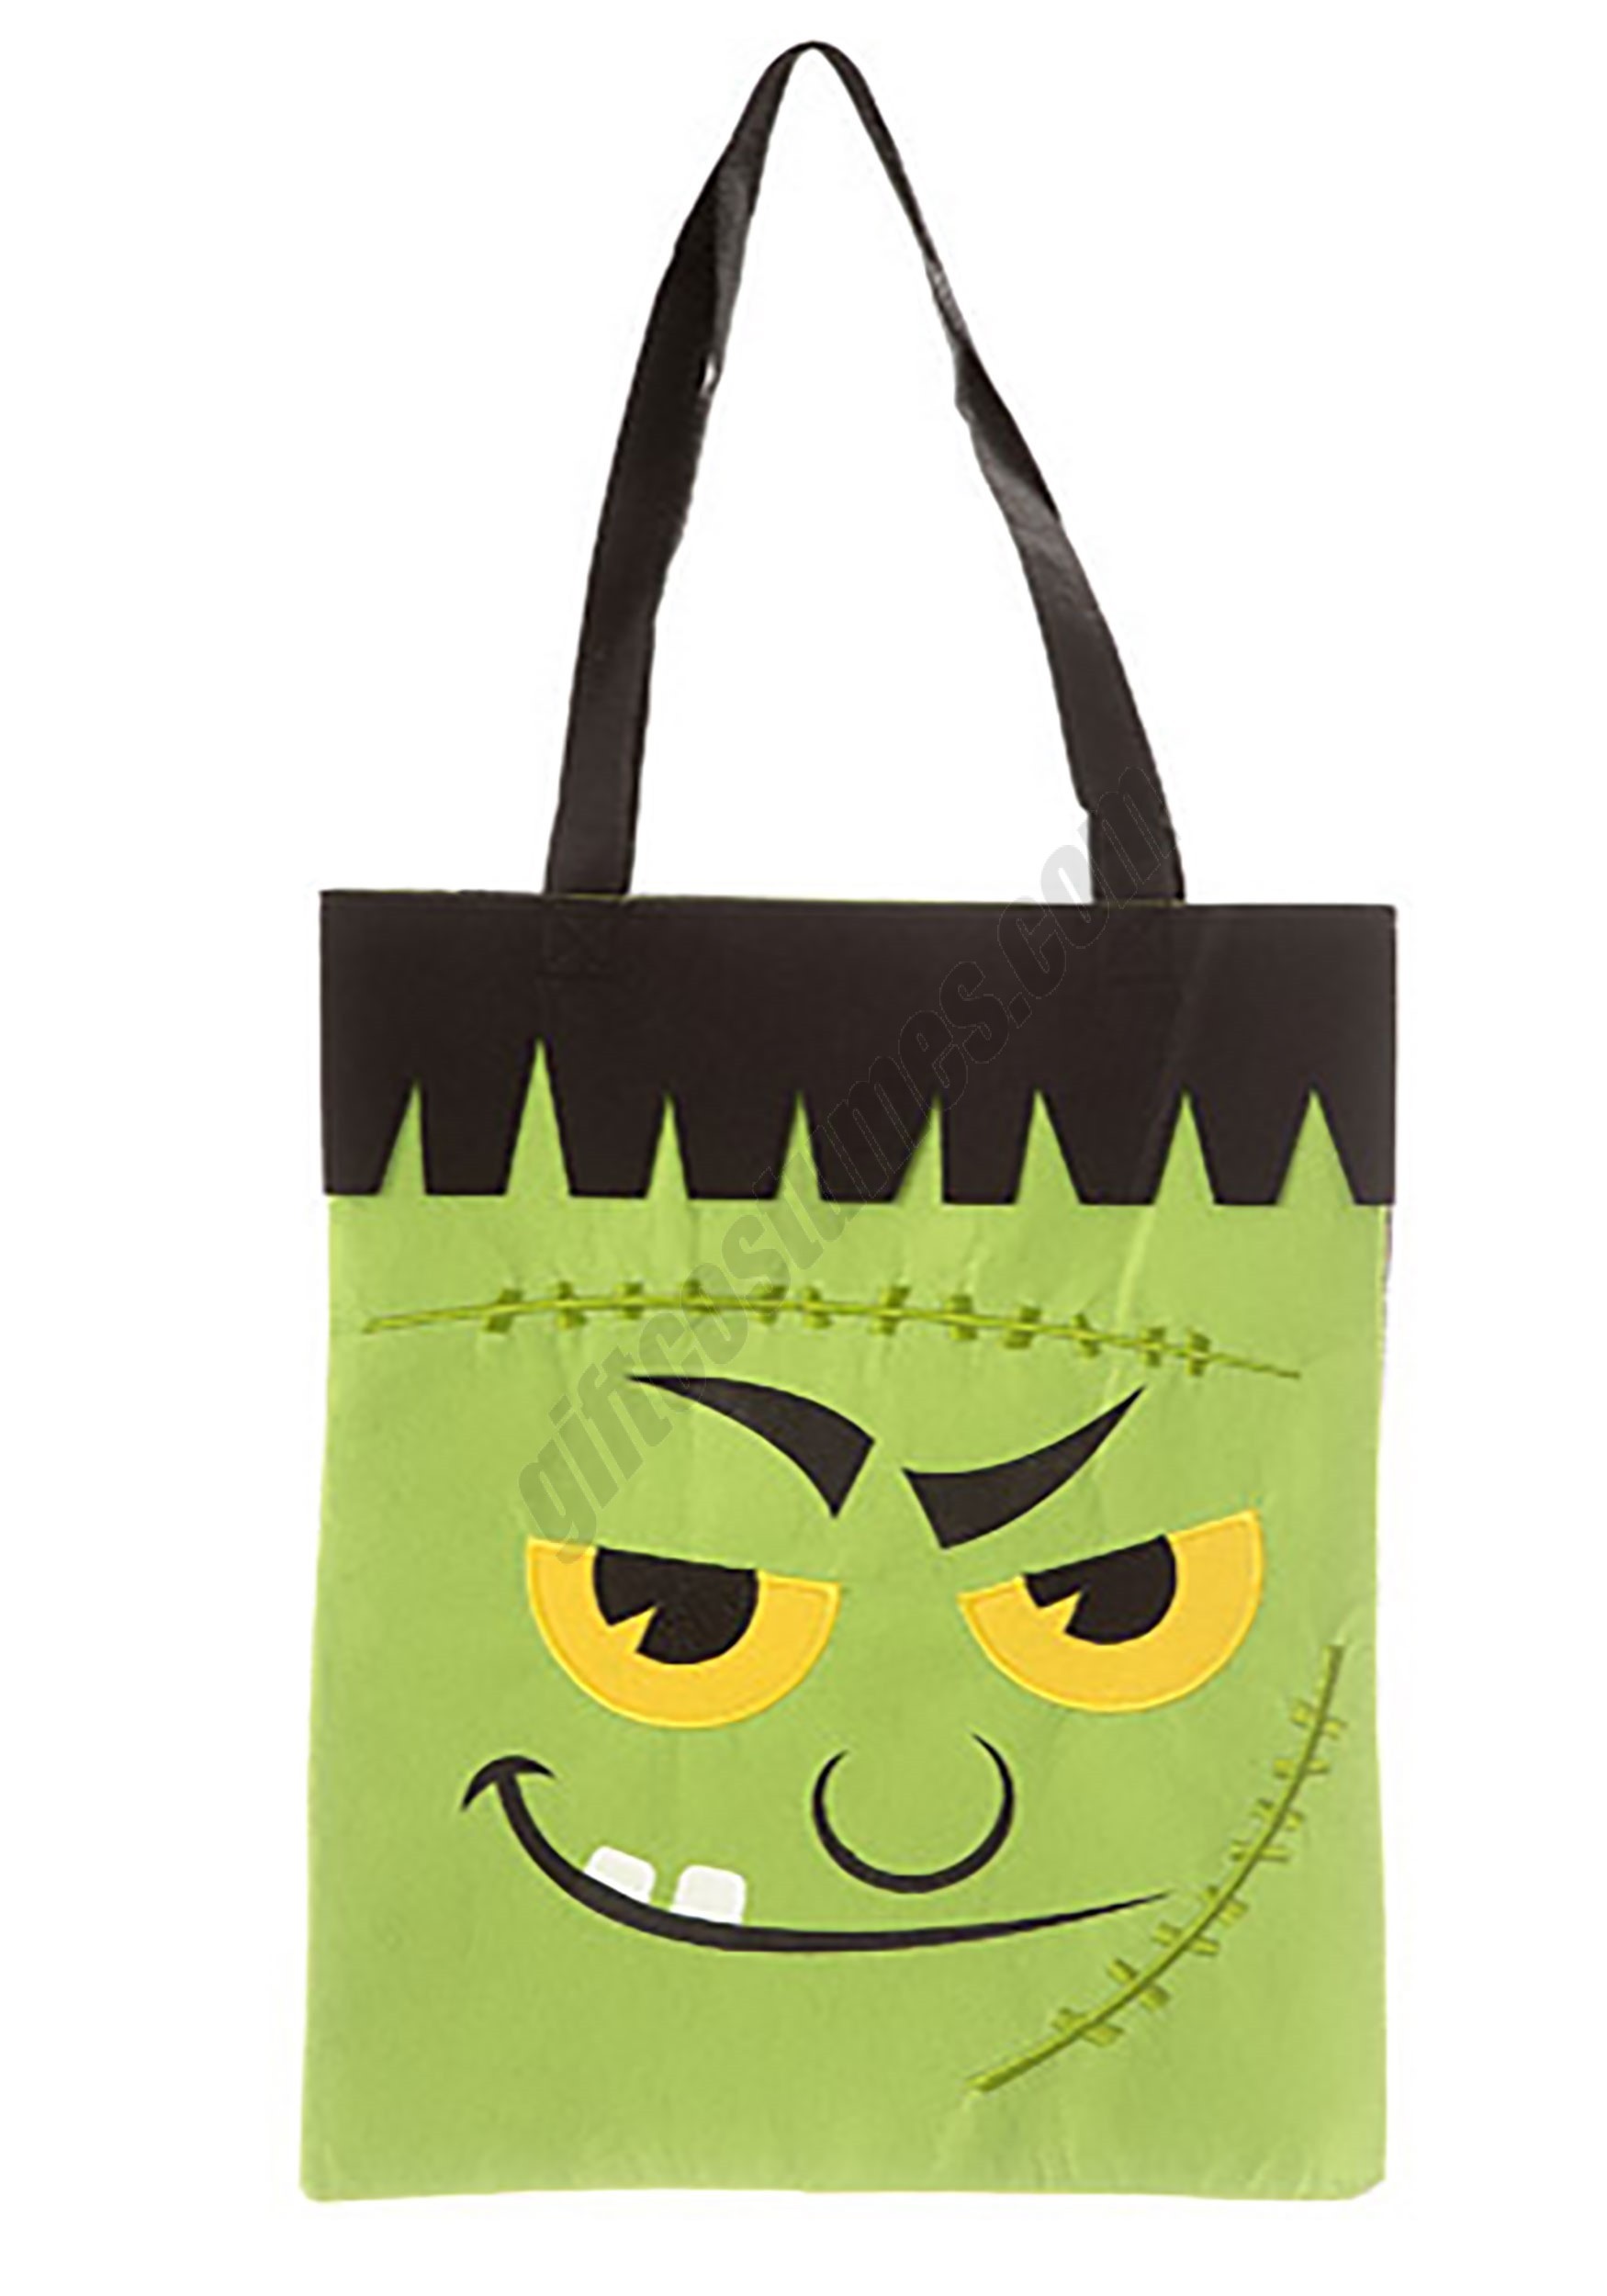 Frankenstein Monster Tote Bag Promotions - Frankenstein Monster Tote Bag Promotions